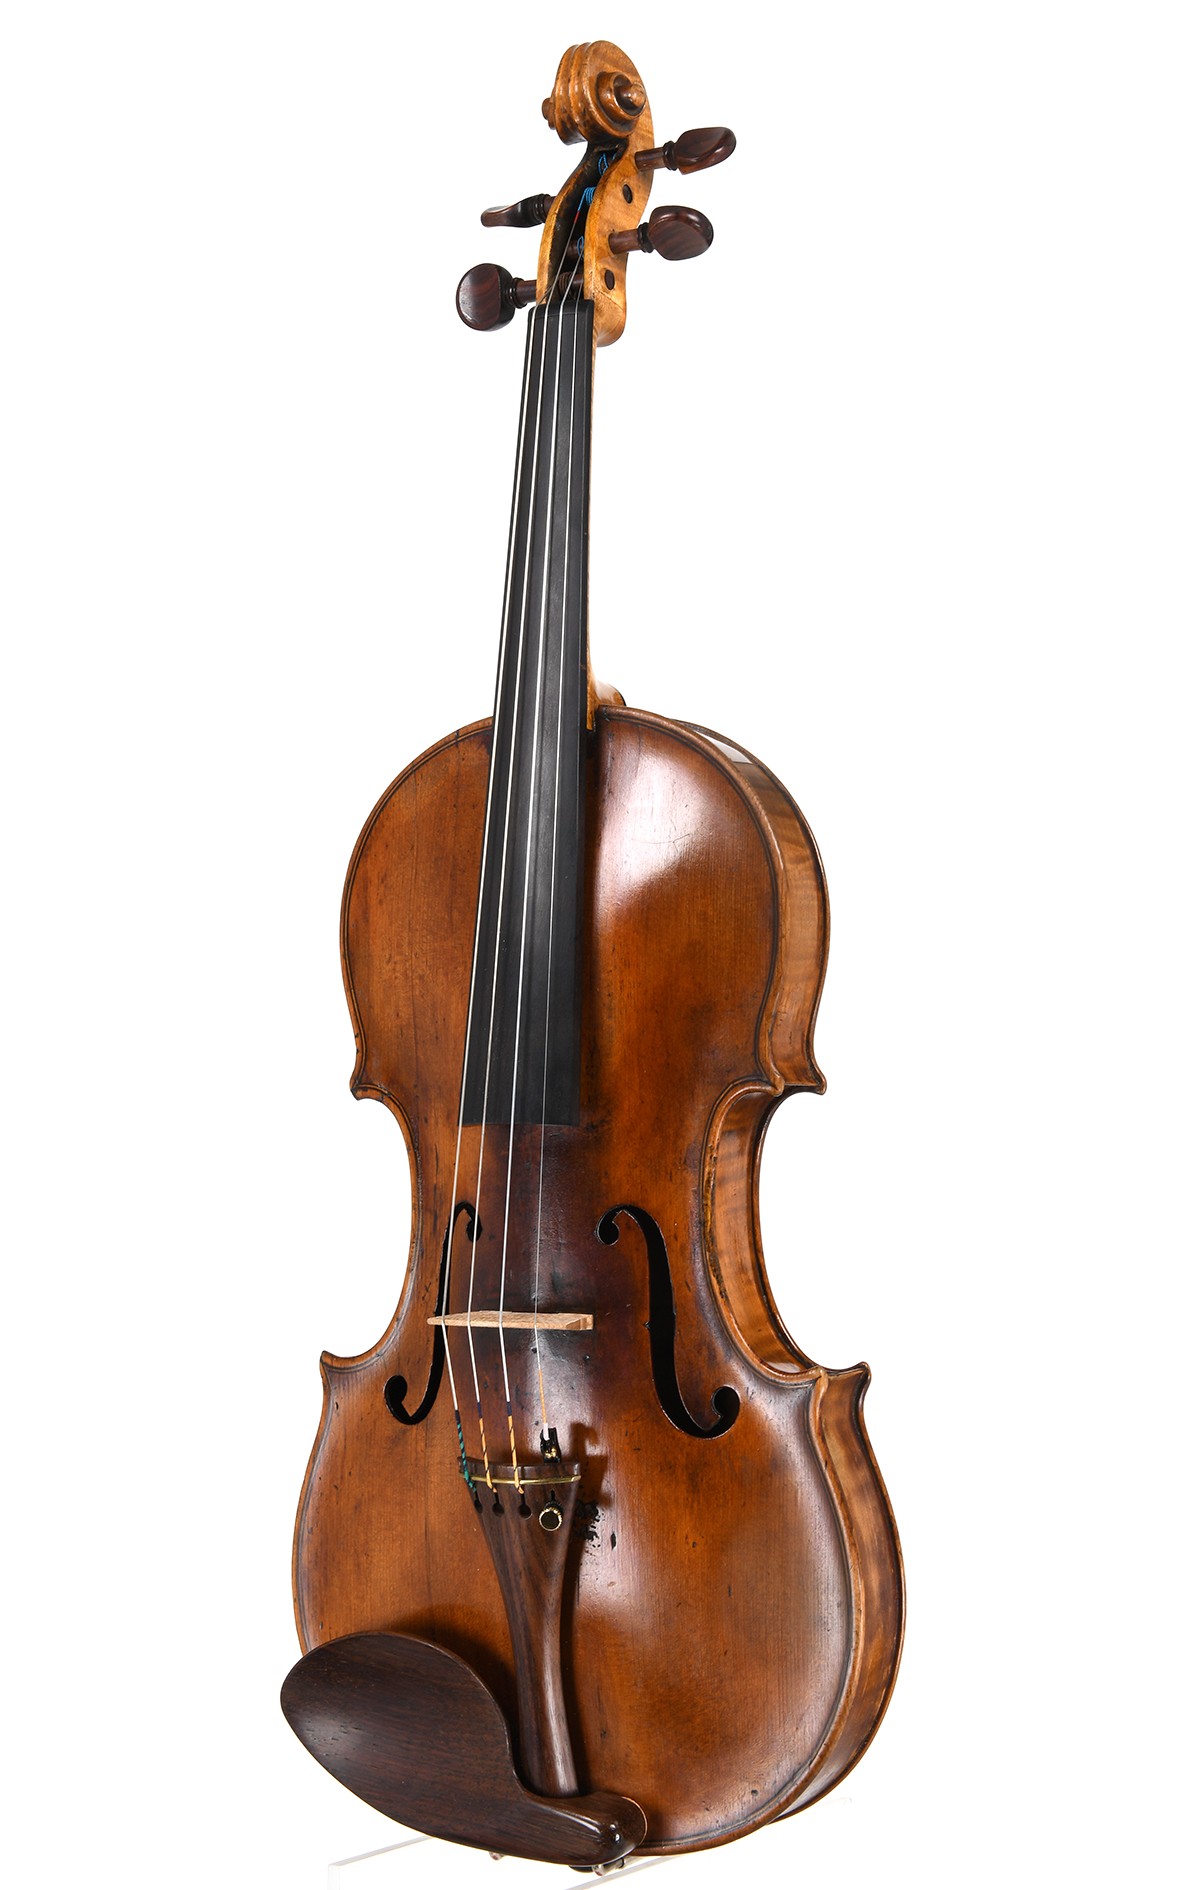 Pregiato violino inglese, circa 1800, famiglia Hill (Lockey Hill)